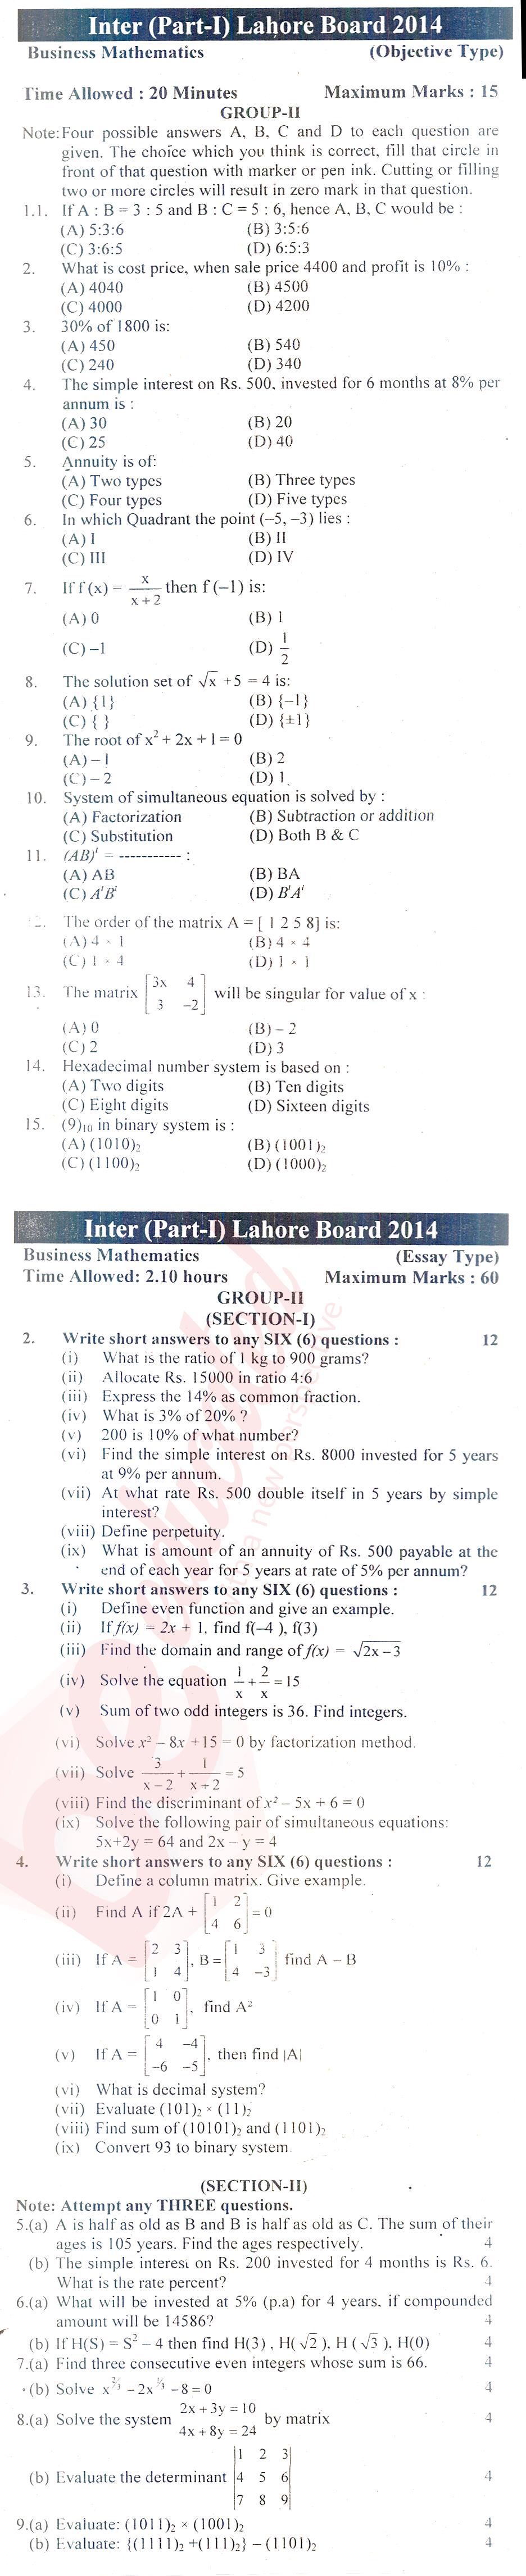 Business Mathematics ICOM Part 1 Past Paper Group 2 BISE Lahore 2014